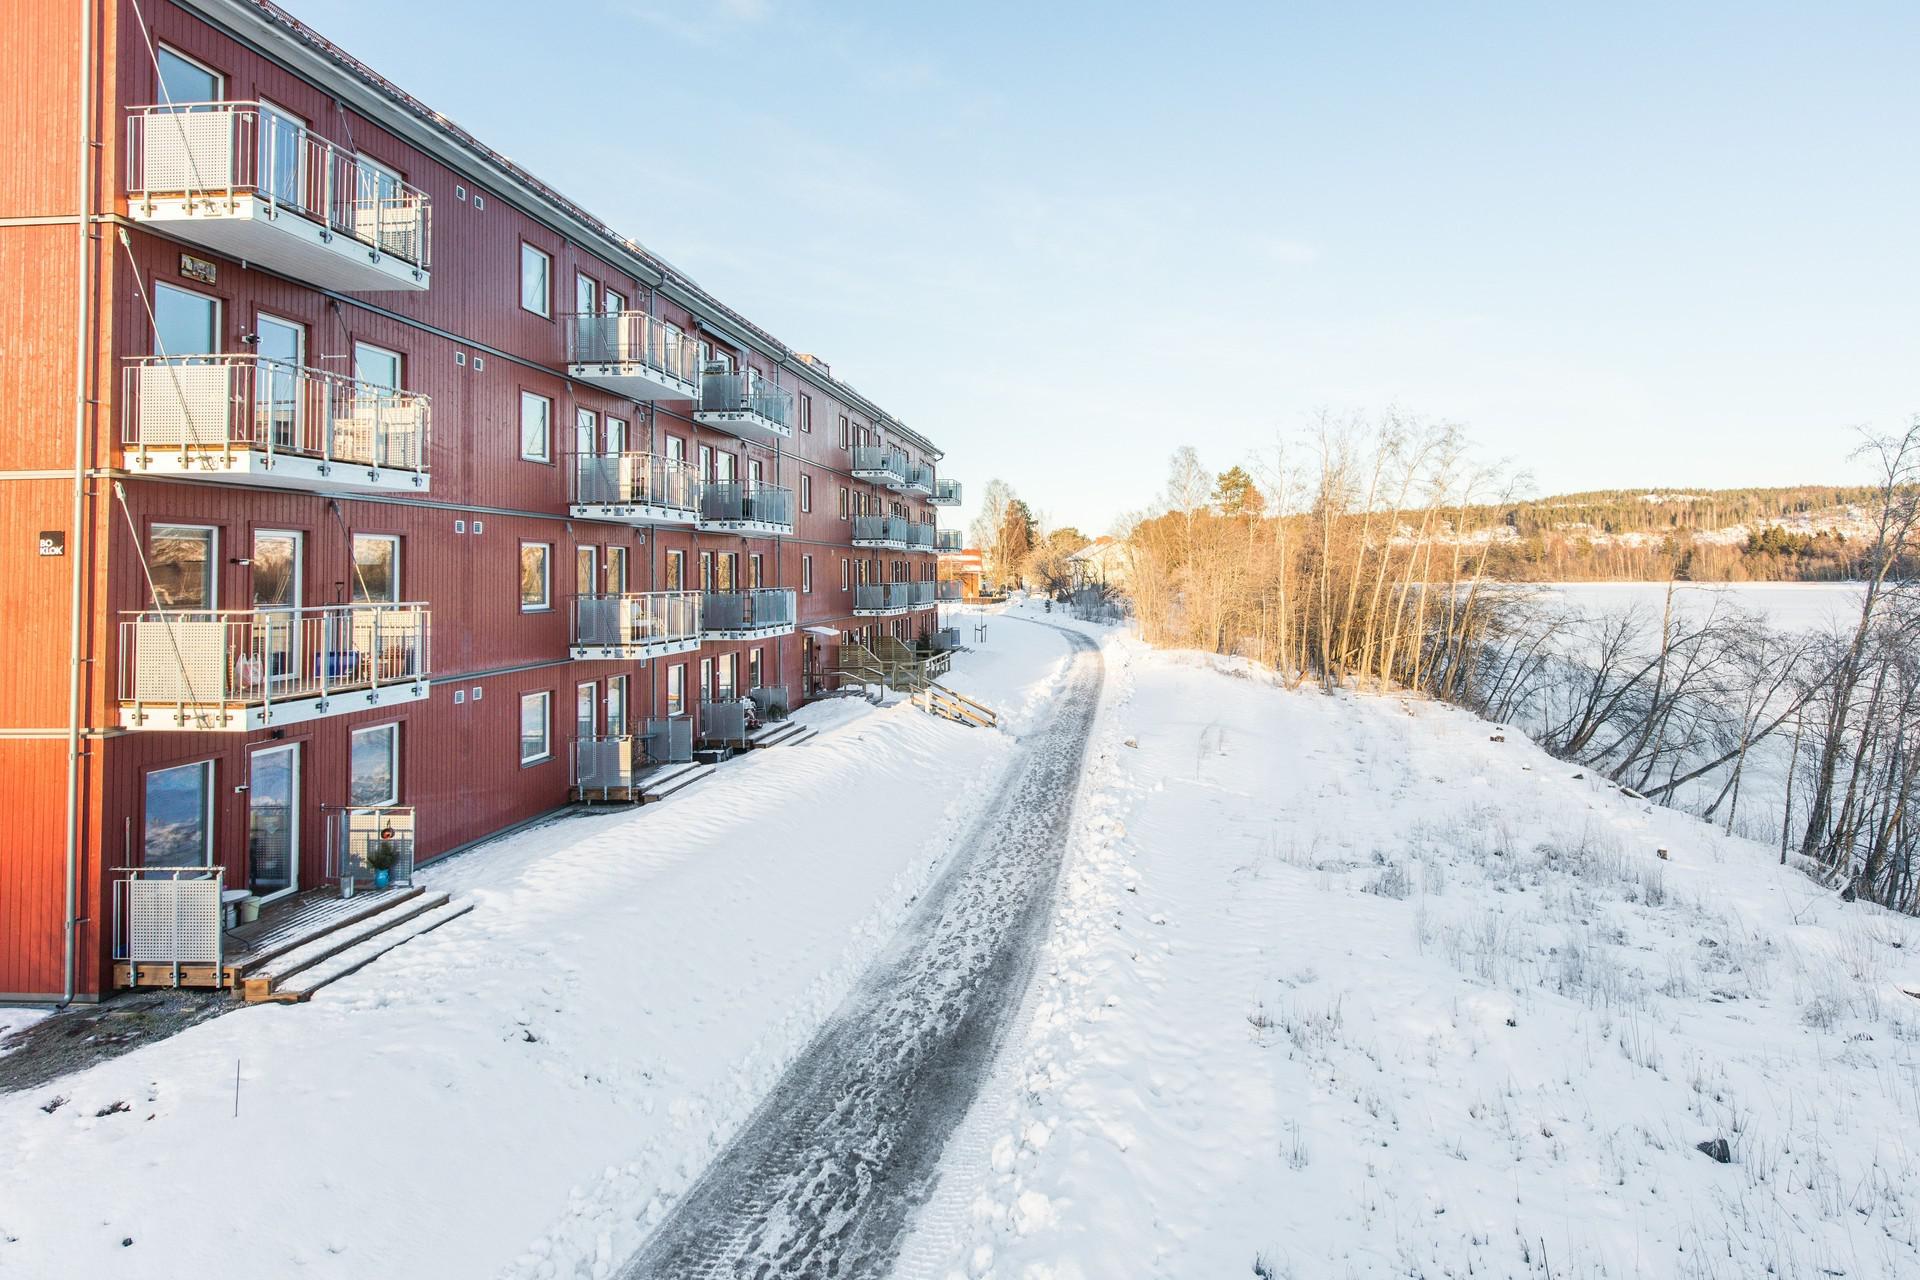 Bo i nybyggt hus intill Ljungan.
Bekvämt med hiss och närhet till Kvissleby centrum